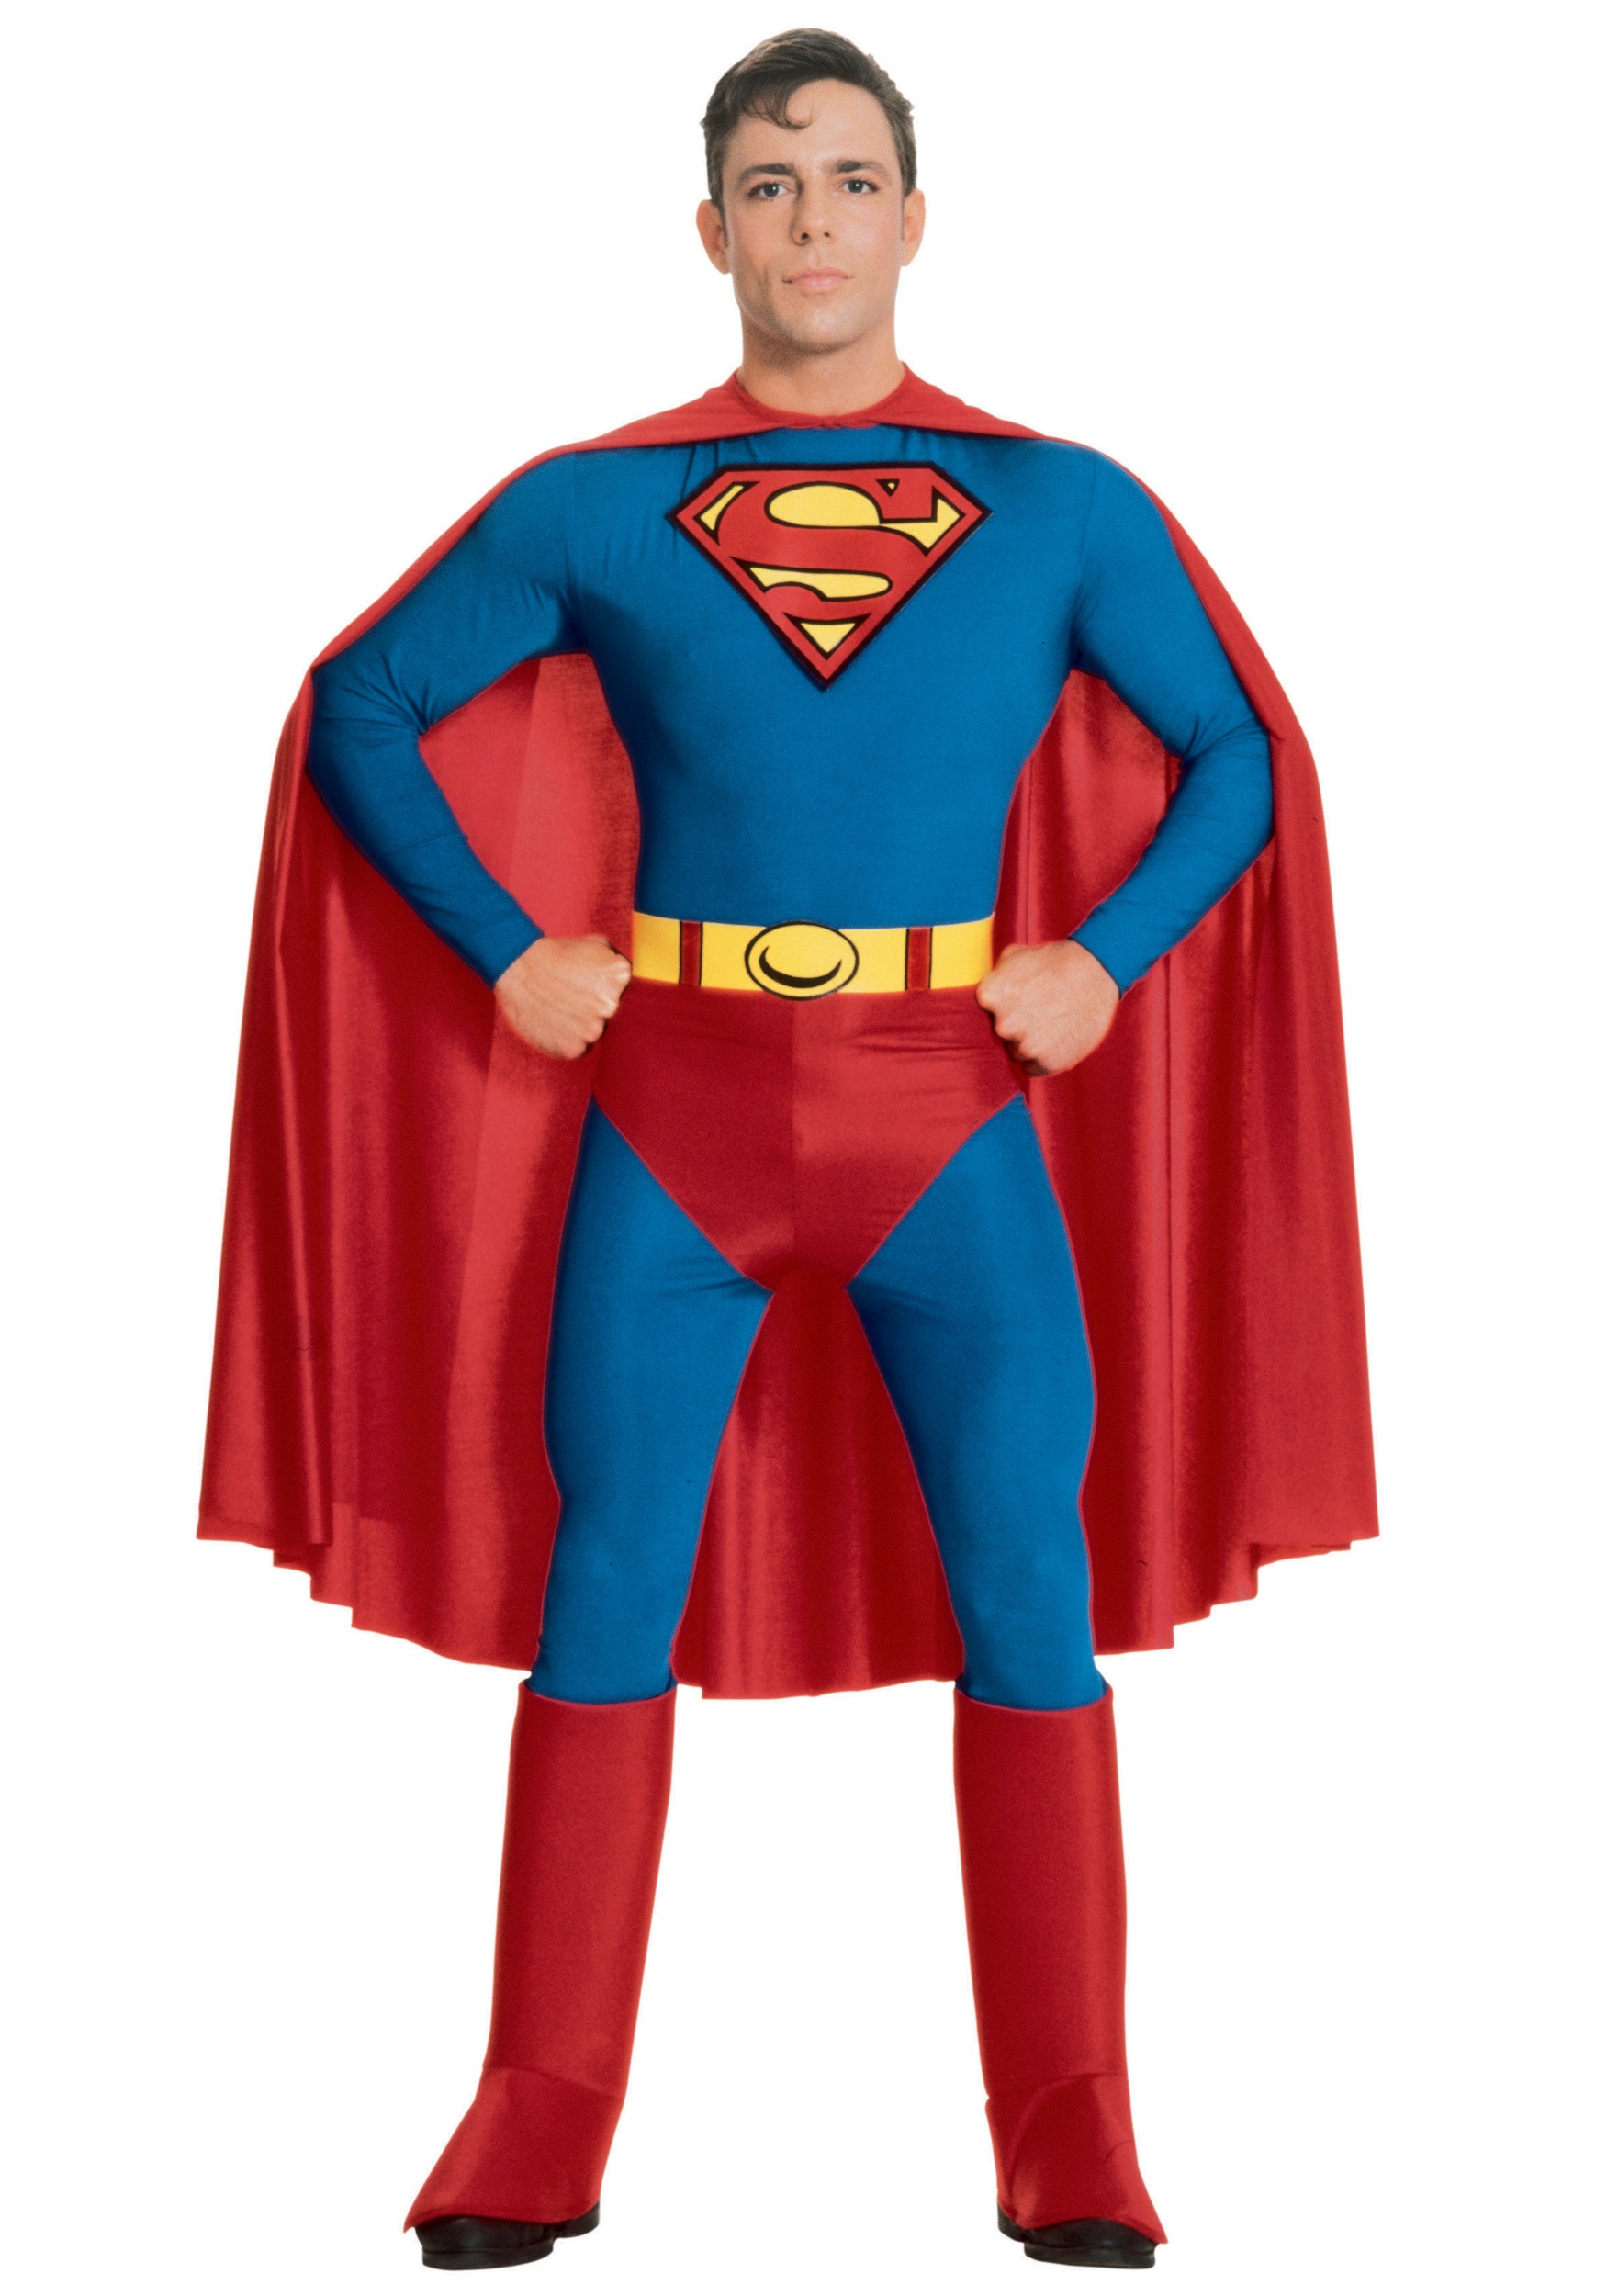 Image of Adult Superman Costume ID RU888001-XL